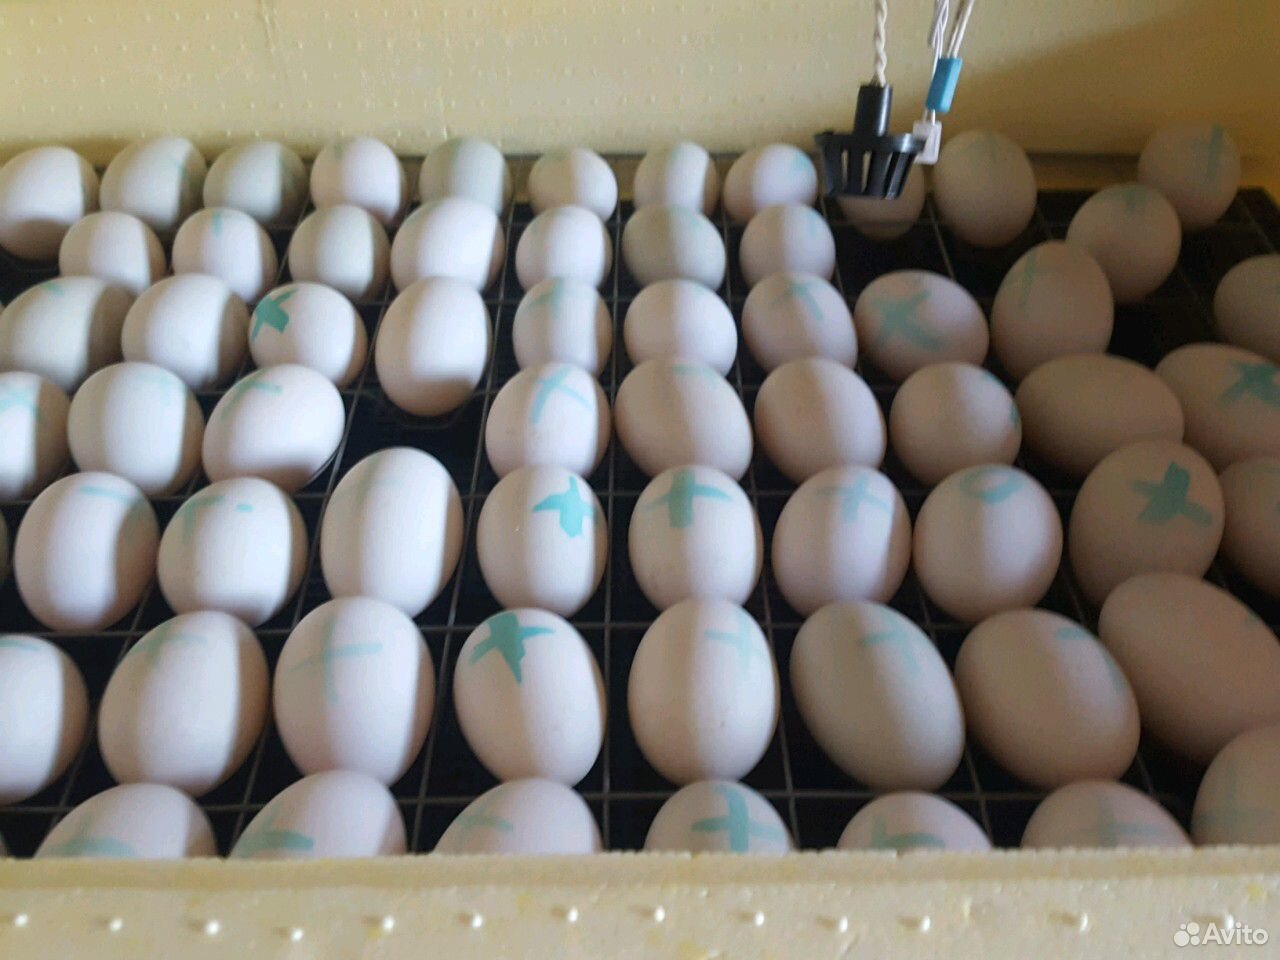 Яйцо утиное инкубационное. Инкубация яйца утки старт 53. Инкубационное яйцо объявление. Яйца уток. Купить инкубационное яйцо в орле